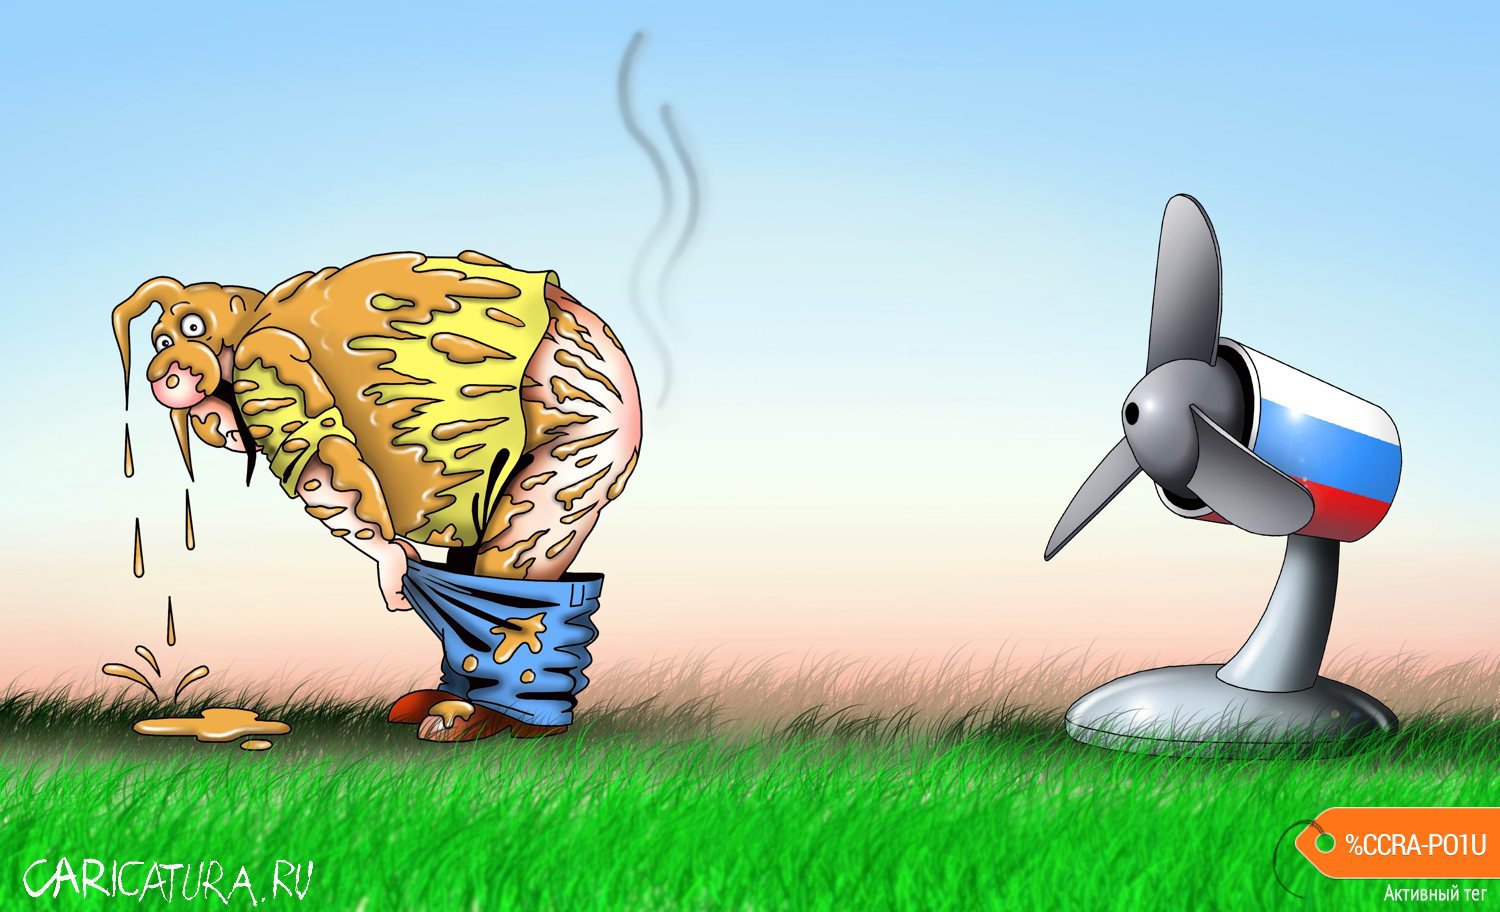 Карикатура "Ветер", Сергей Корсун